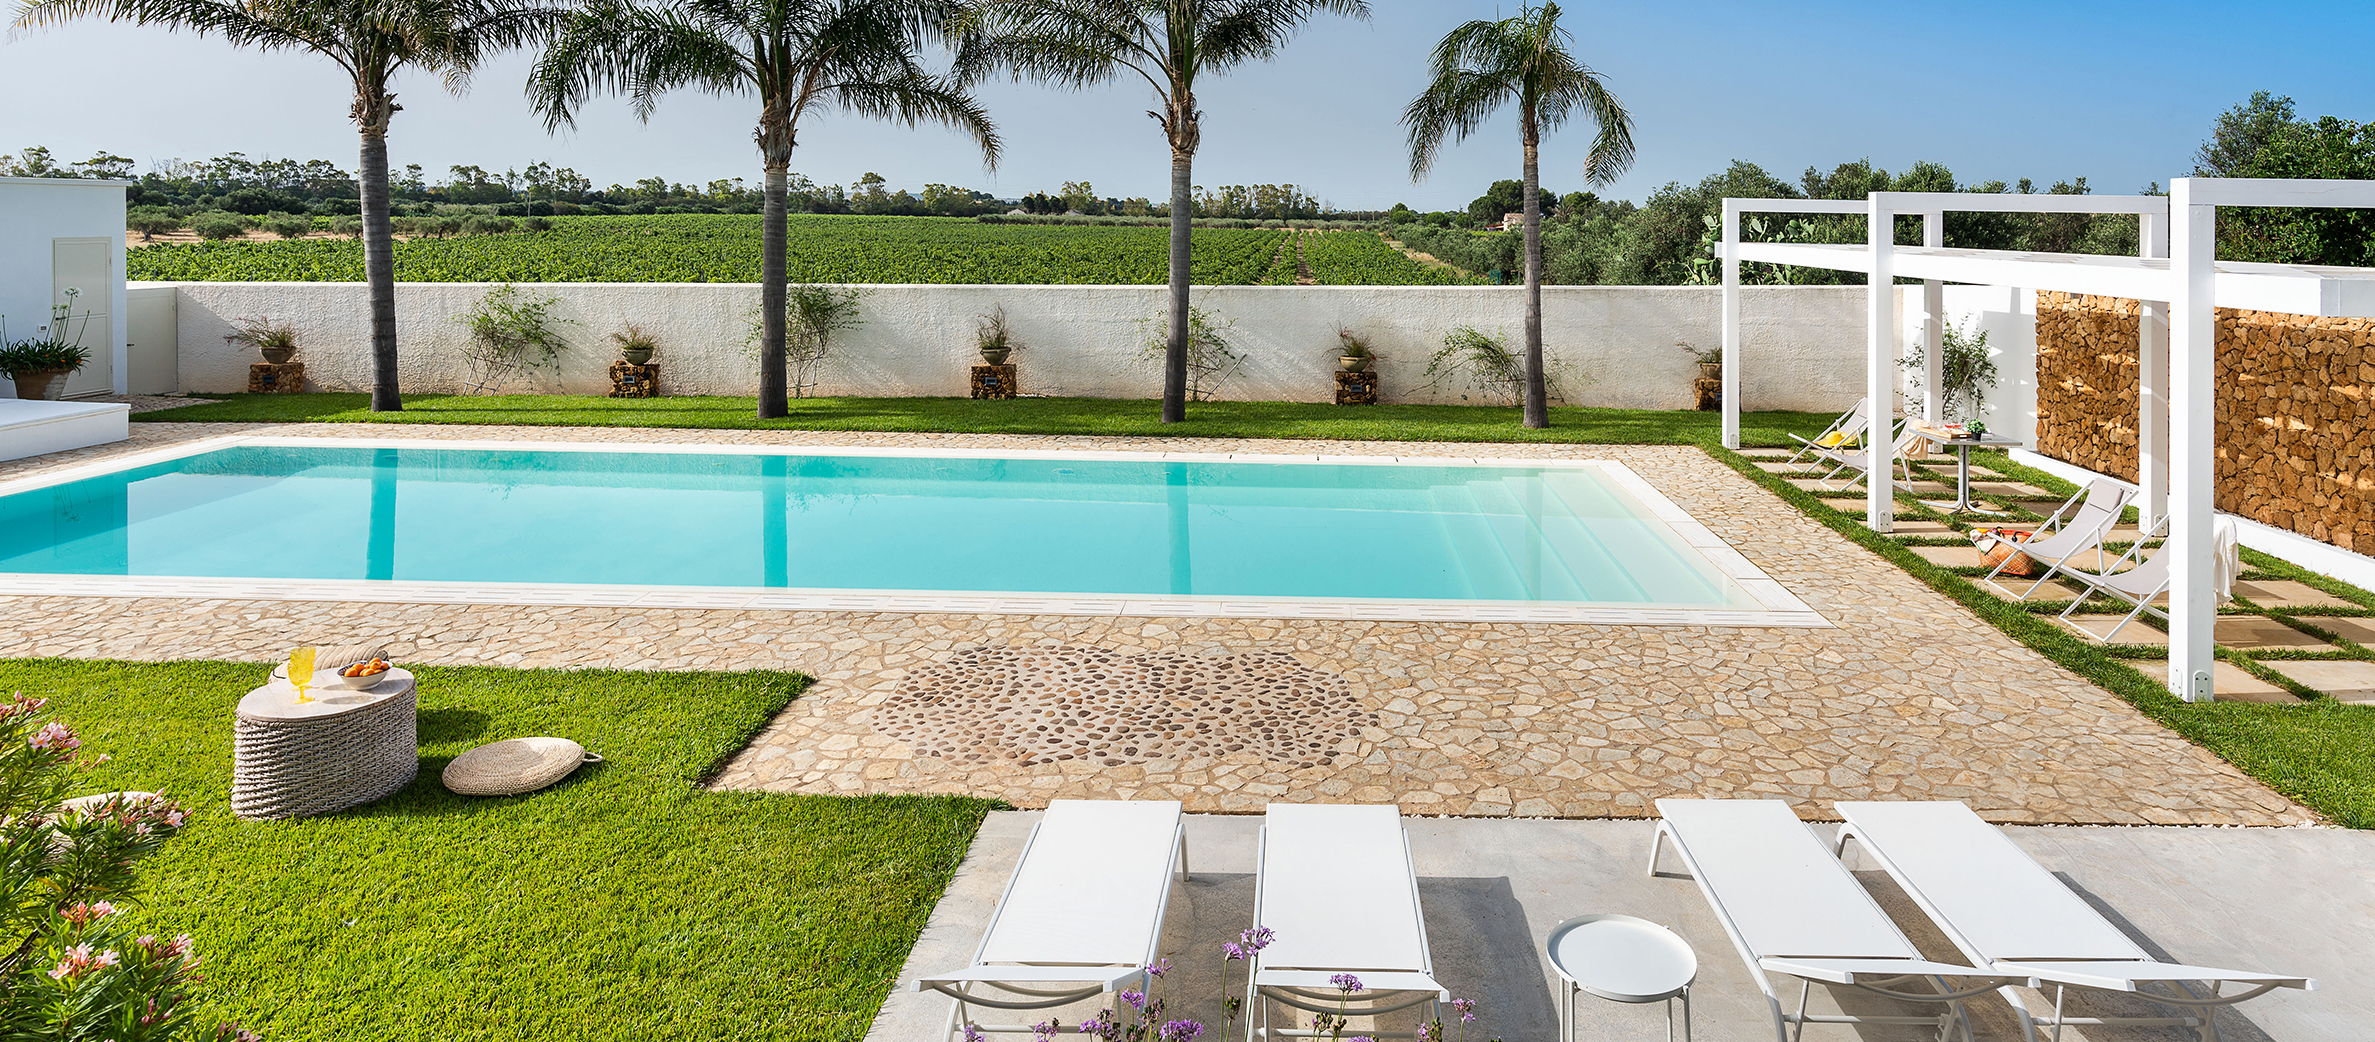 Pietra del Sole, Trapani, Sicily - Luxury villa with pool for rent - 0